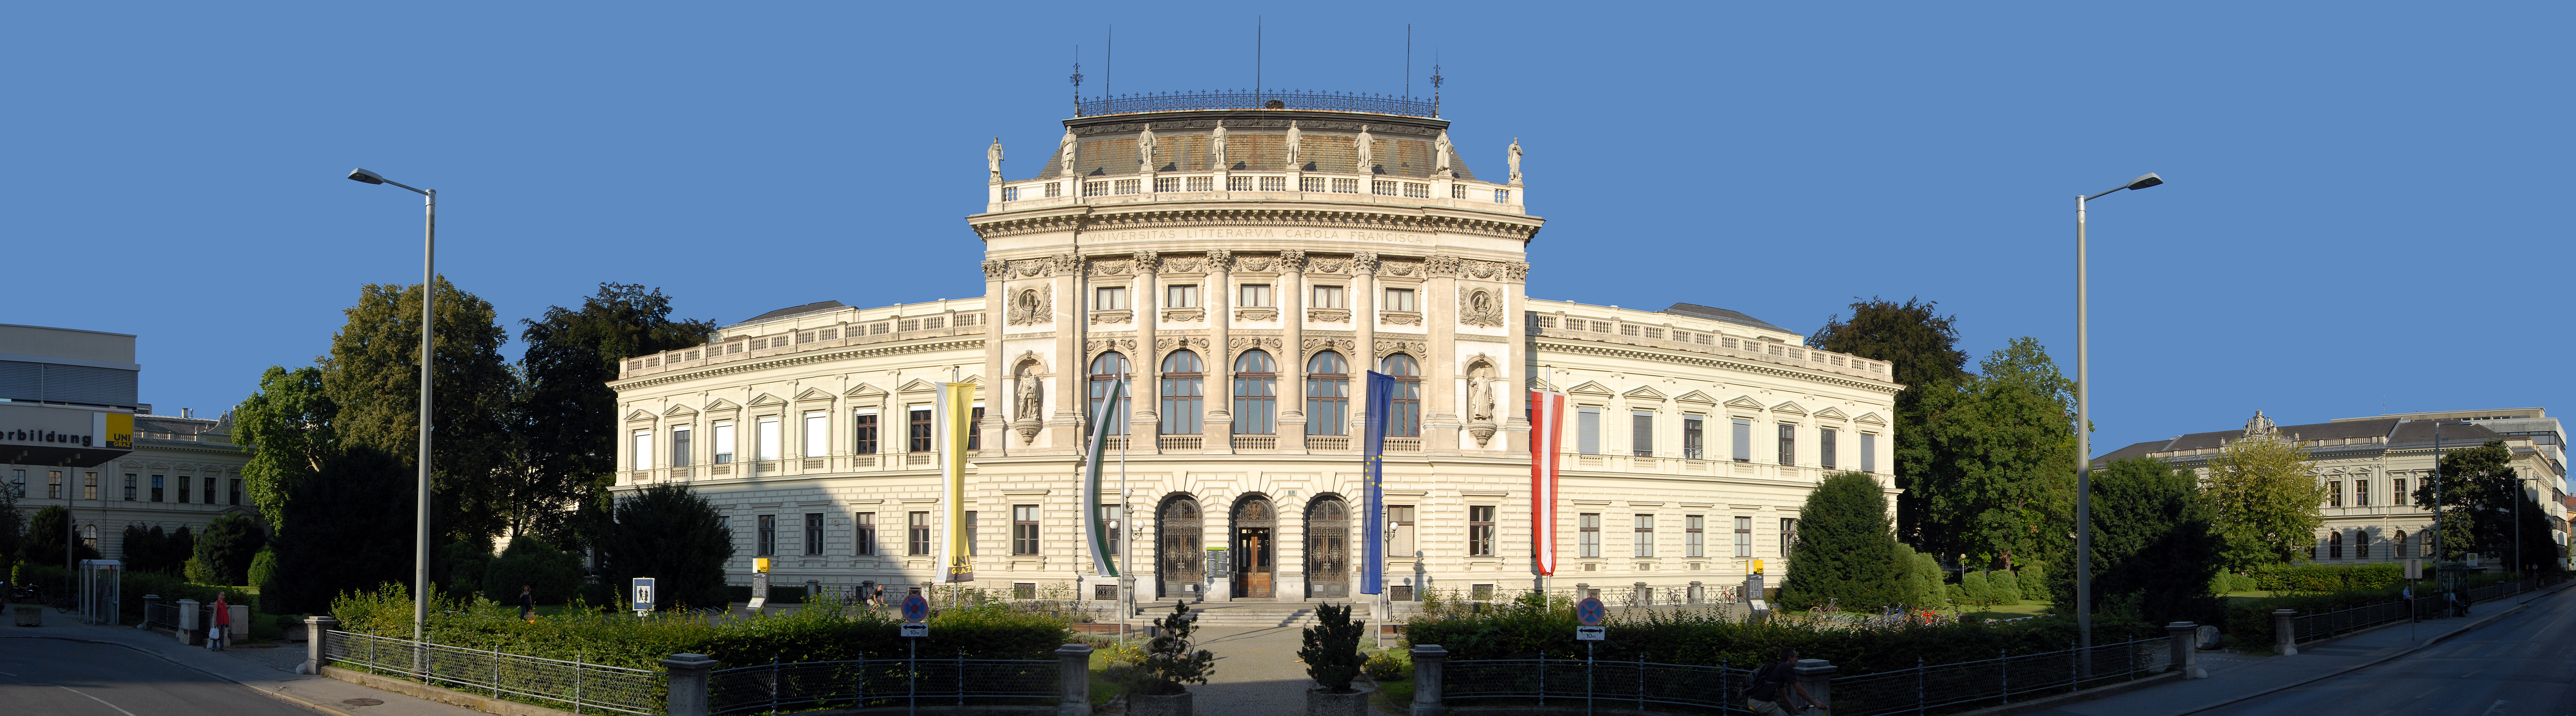 Hauptgebaeude der Uni Graz (Panorama-Aufnahme) ©cp-pictures